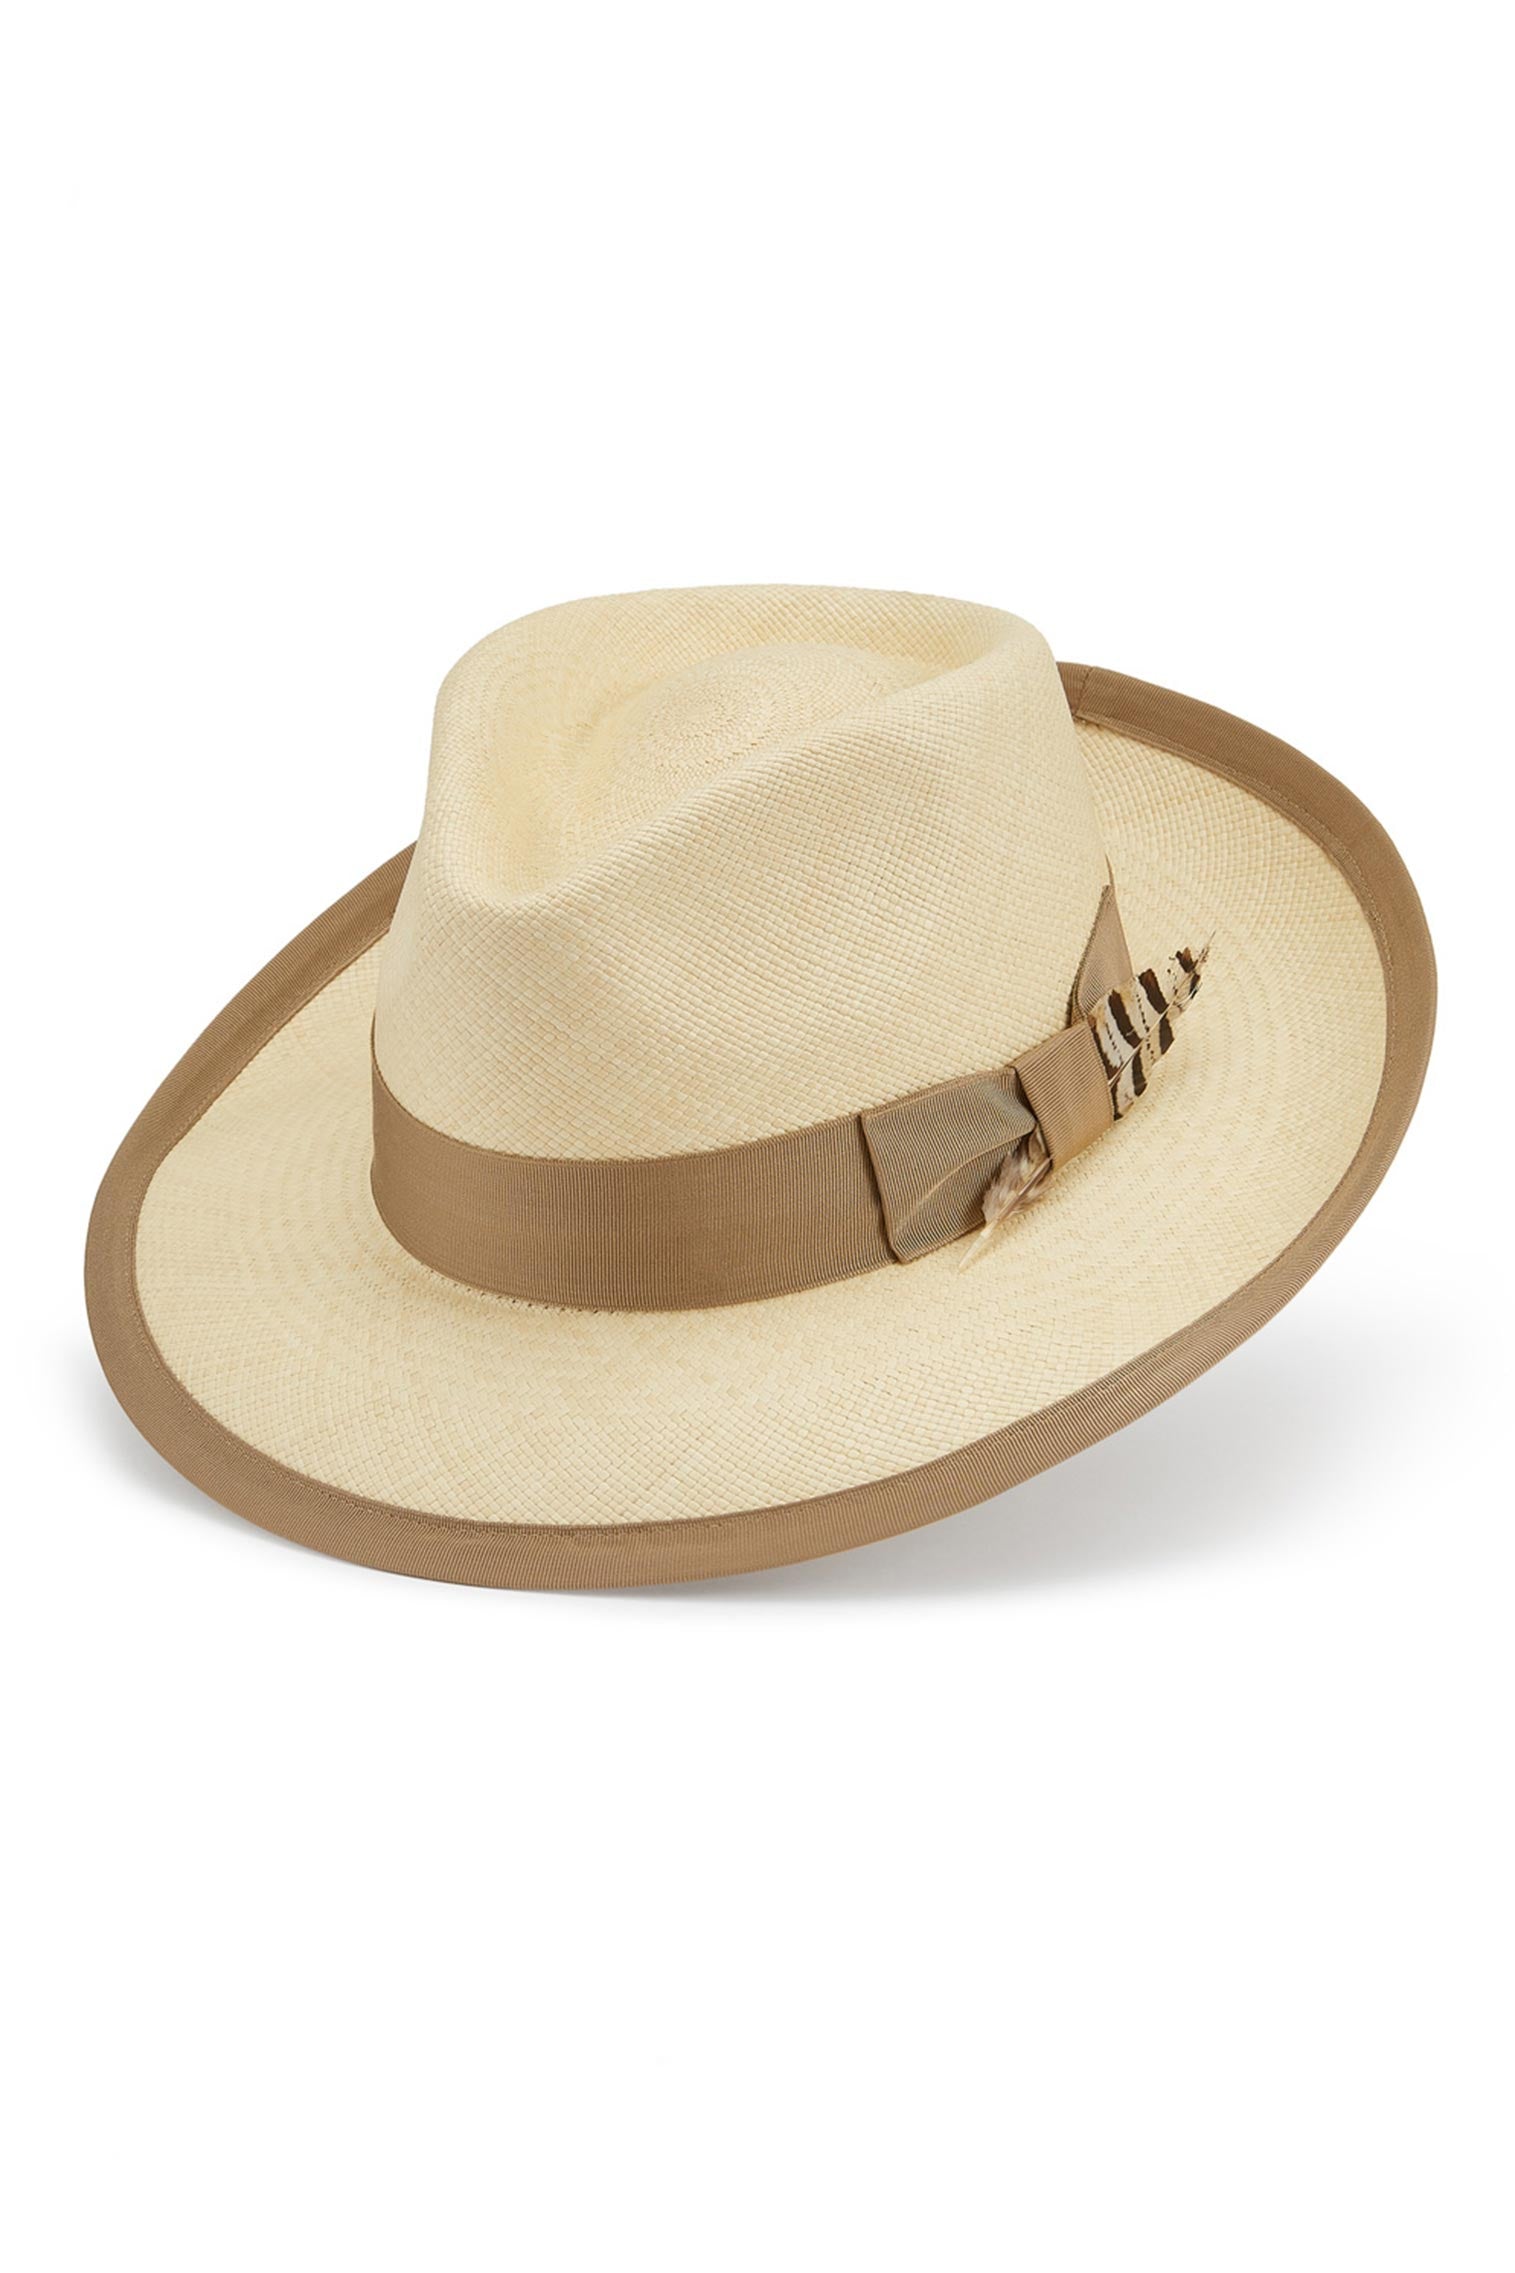 San Diego Panama - Best Selling Hats - Lock & Co. Hatters London UK